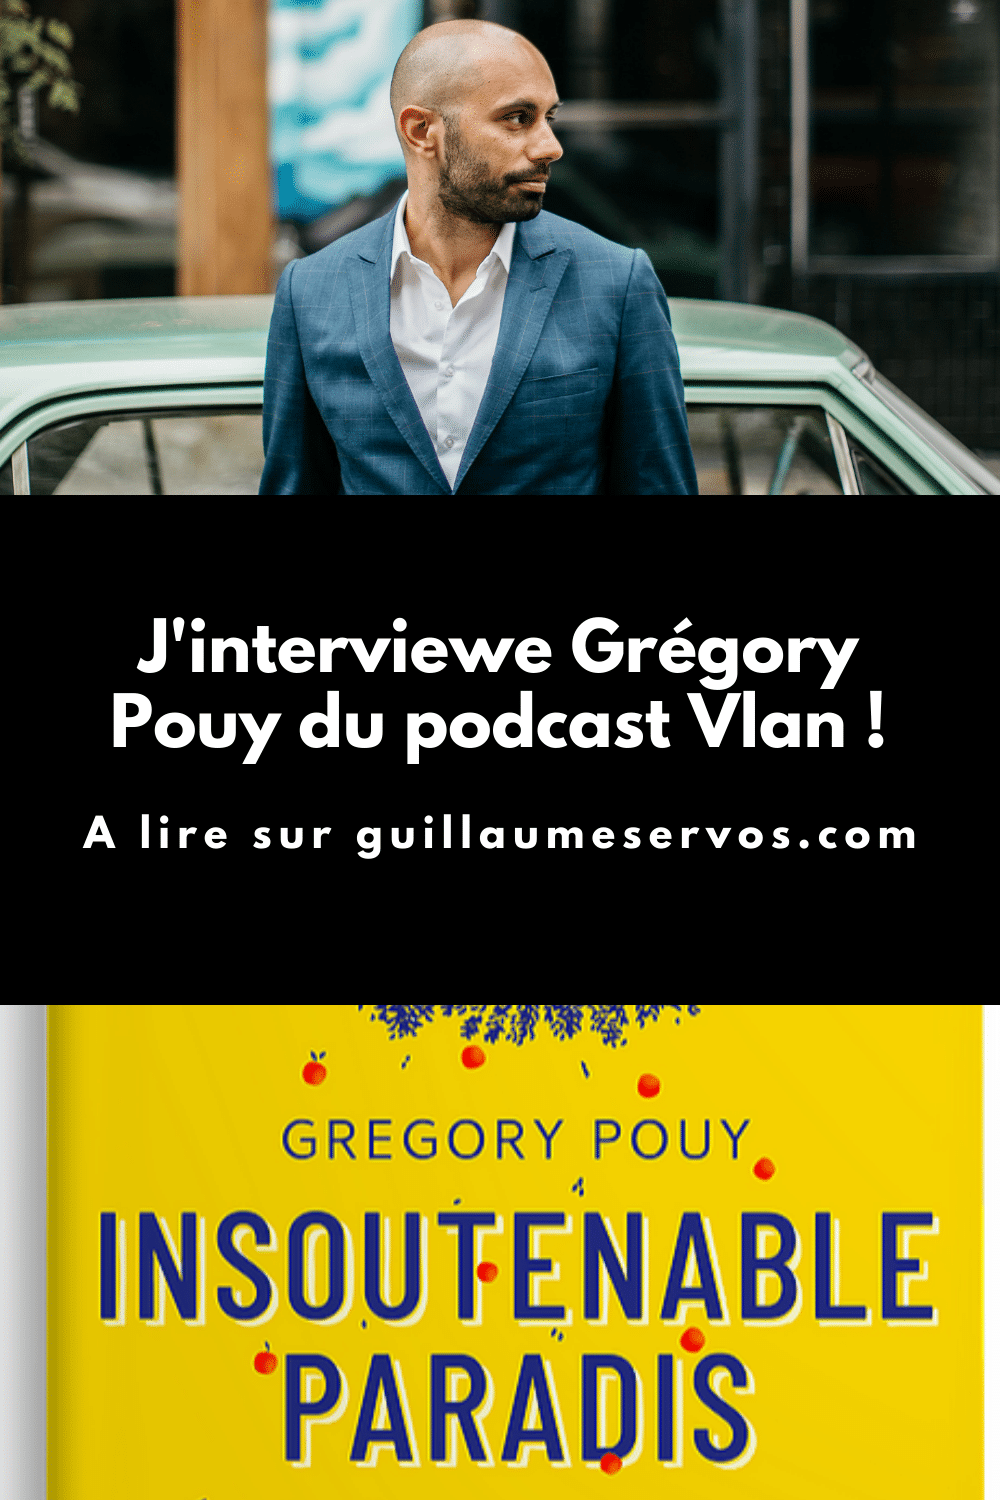 Découvre mon interview avec Grégory Pouy du podacast Vlan. Au menu : son rapport au podcast, aux réseaux sociaux et au voyage.